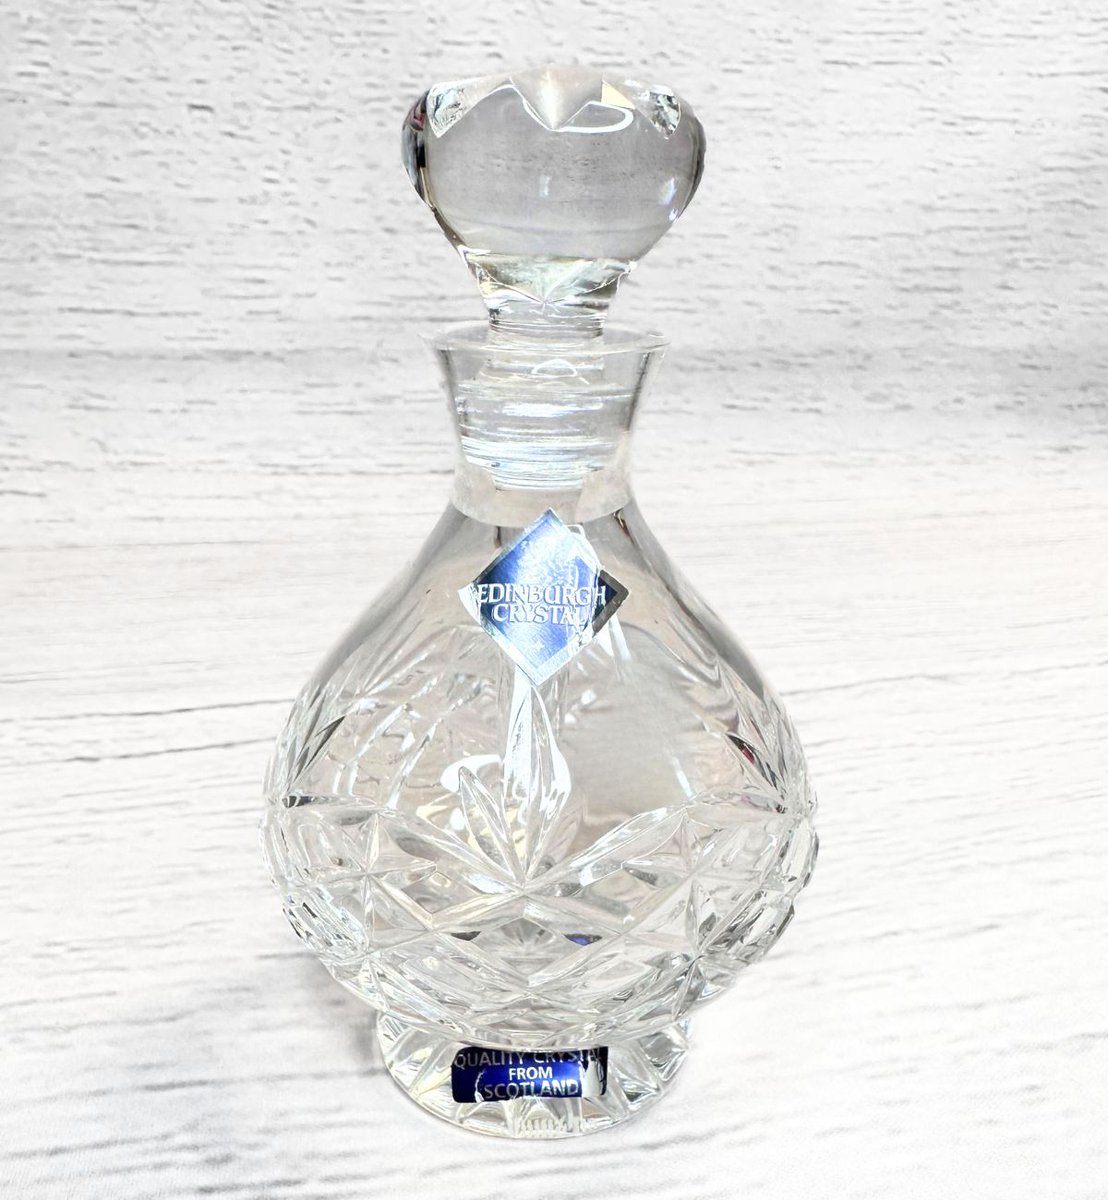 Vintage Edinburgh Crystal Perfume Bottle with Dropper
 myvintage.uk/product-page/v… #vintage #uniquegifts #giftsforher #giftsformom #vintagecollectibles #vintagestore #Collectibles #Collectible #MyVintage #vintageshop